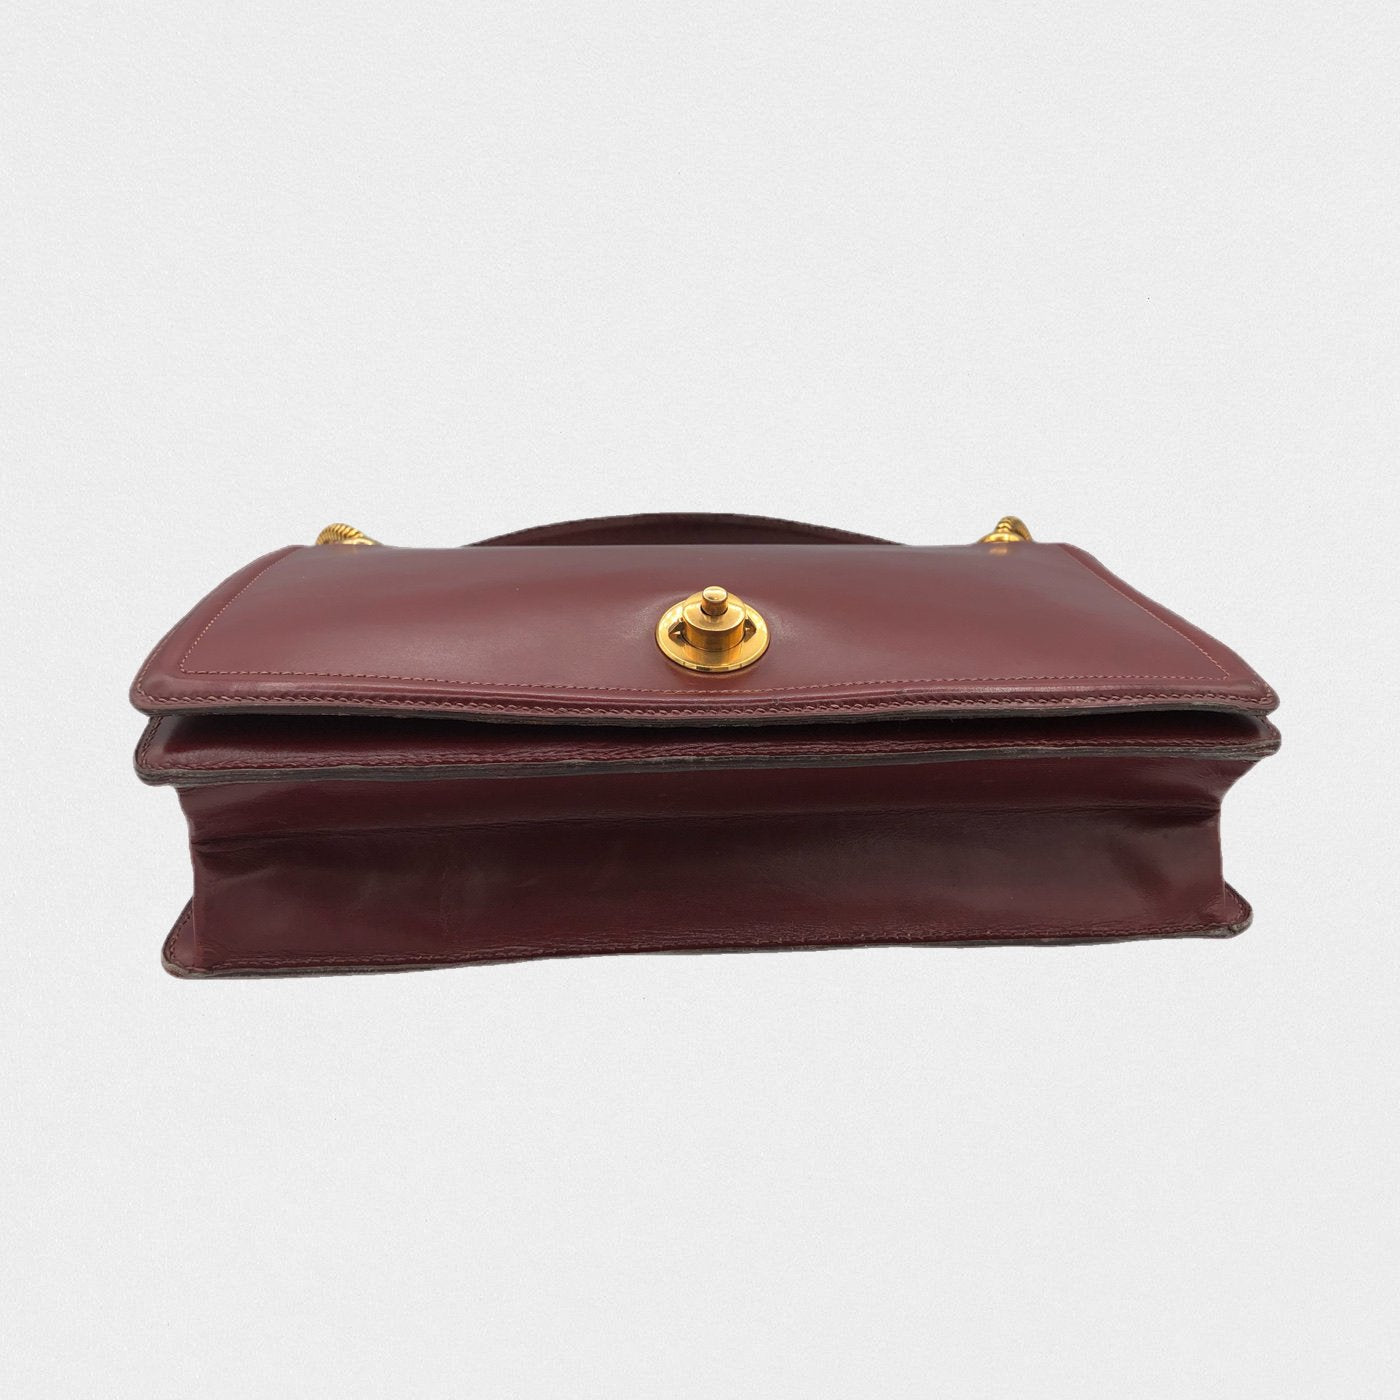 Lysis vintage Hermes bag - 1950s